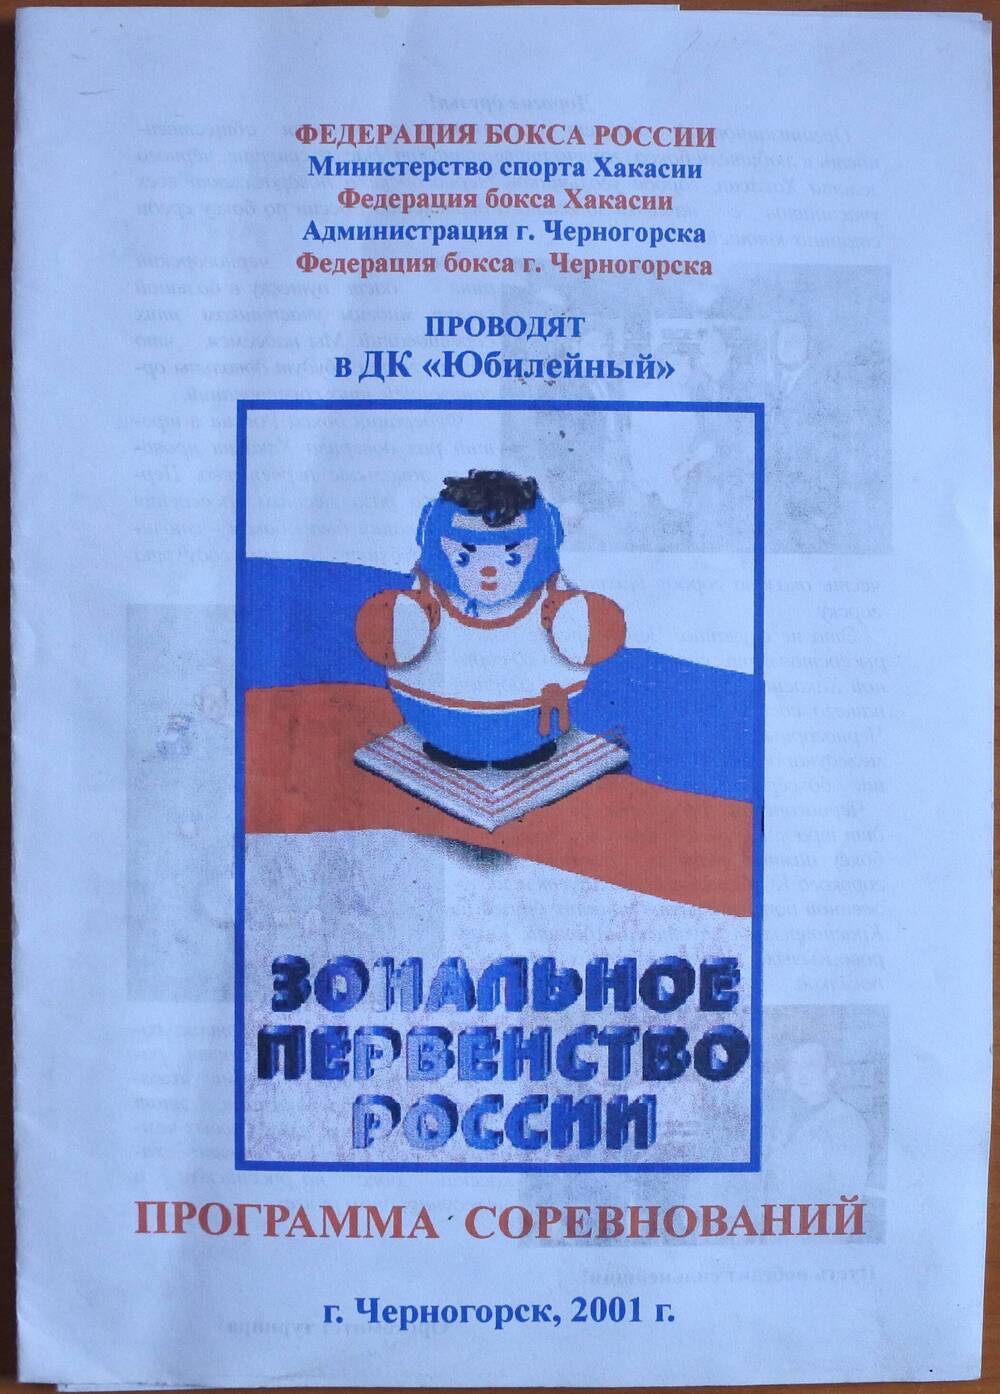 Программа соревнований «Зональное первенство России» г. Черногорск, 2001 год.